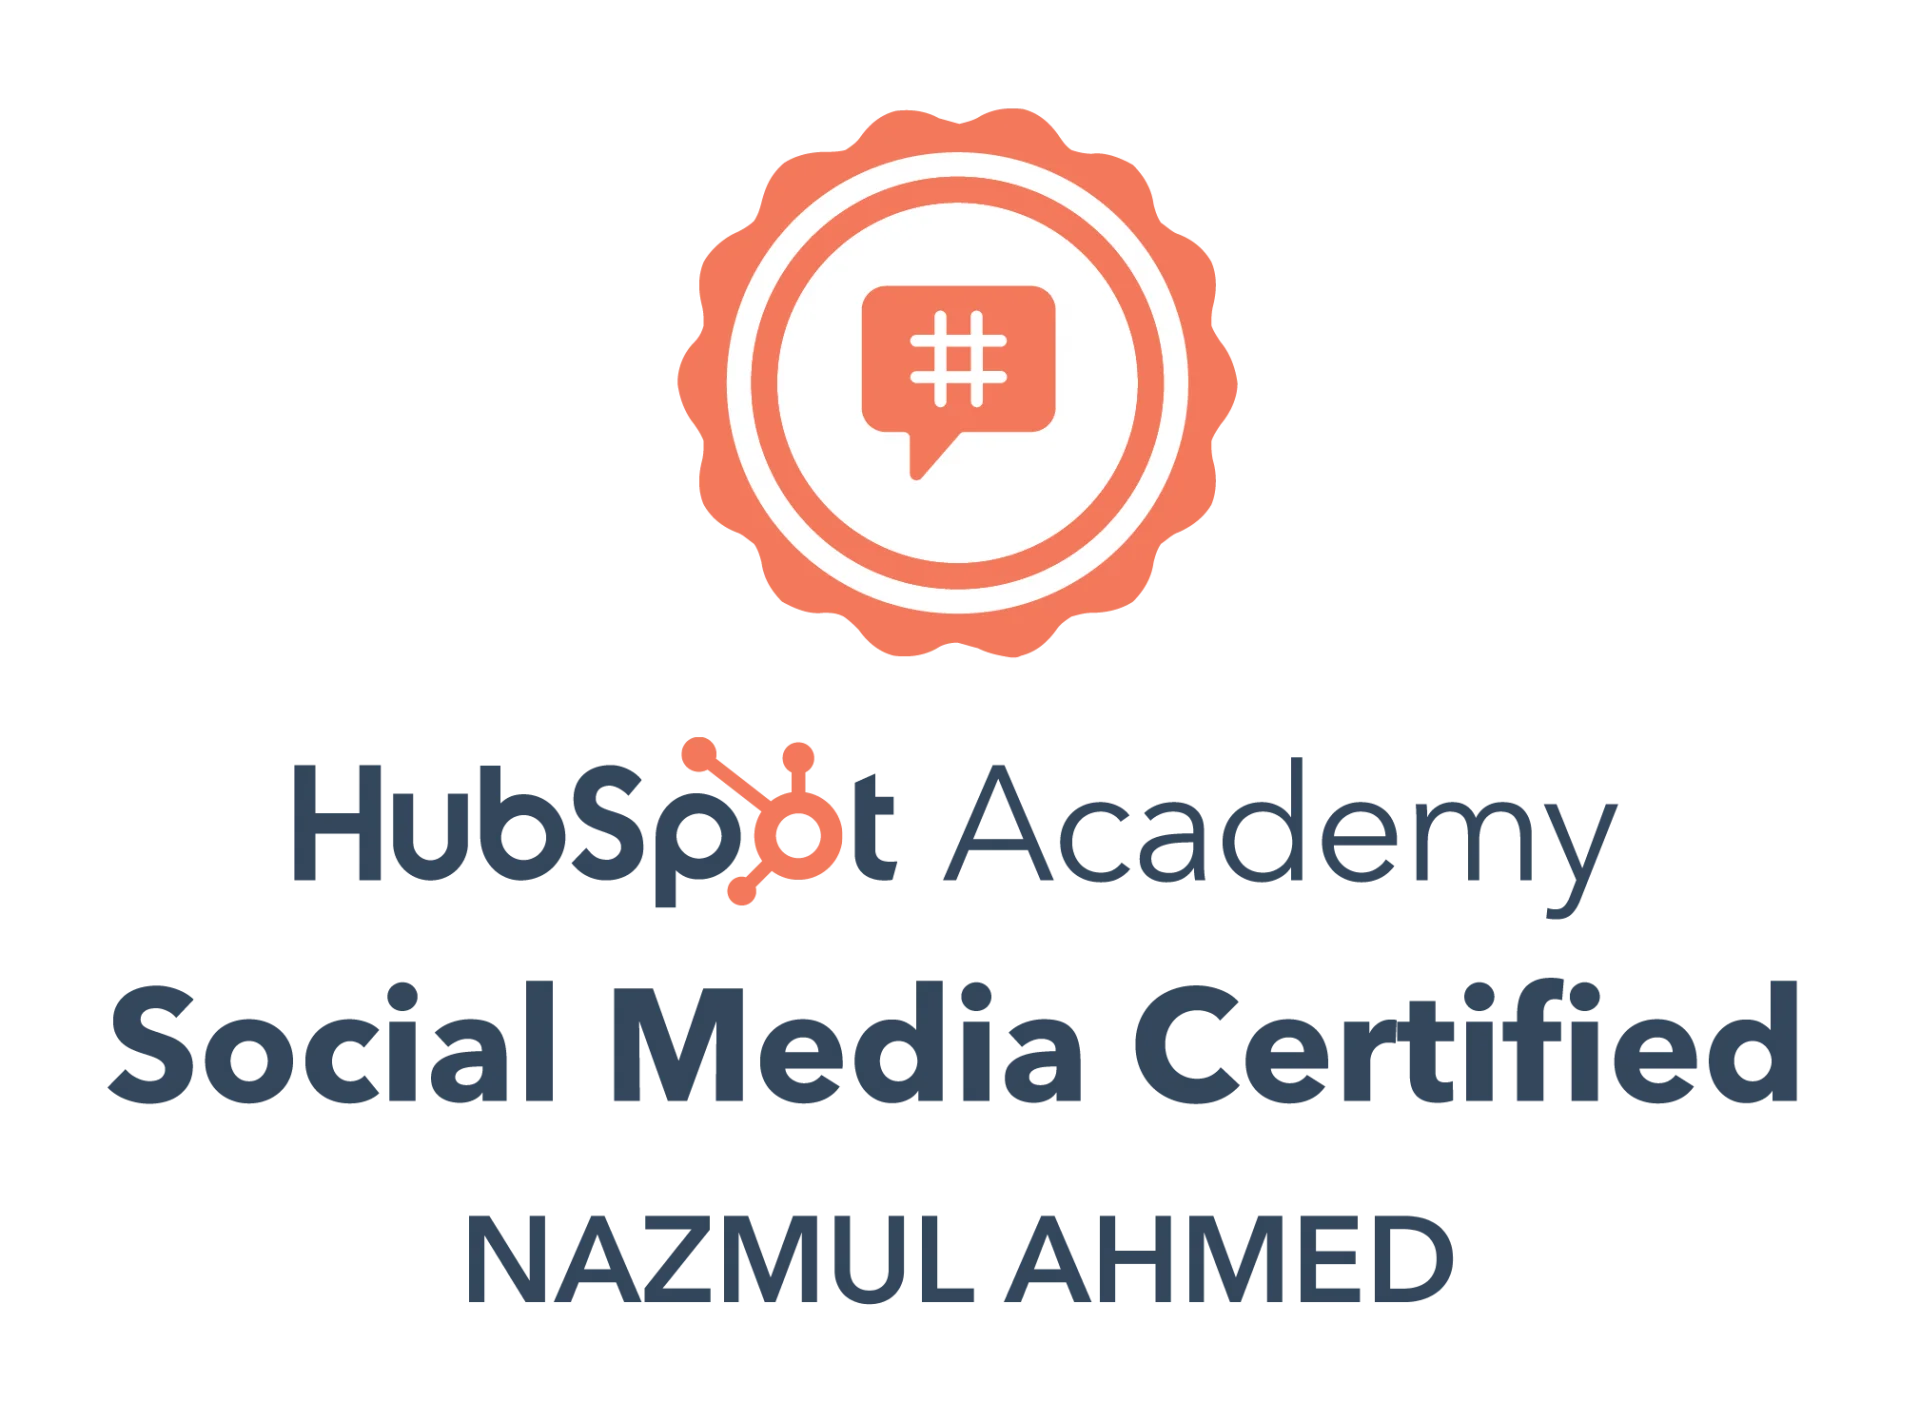 social media certificate by Hubspot